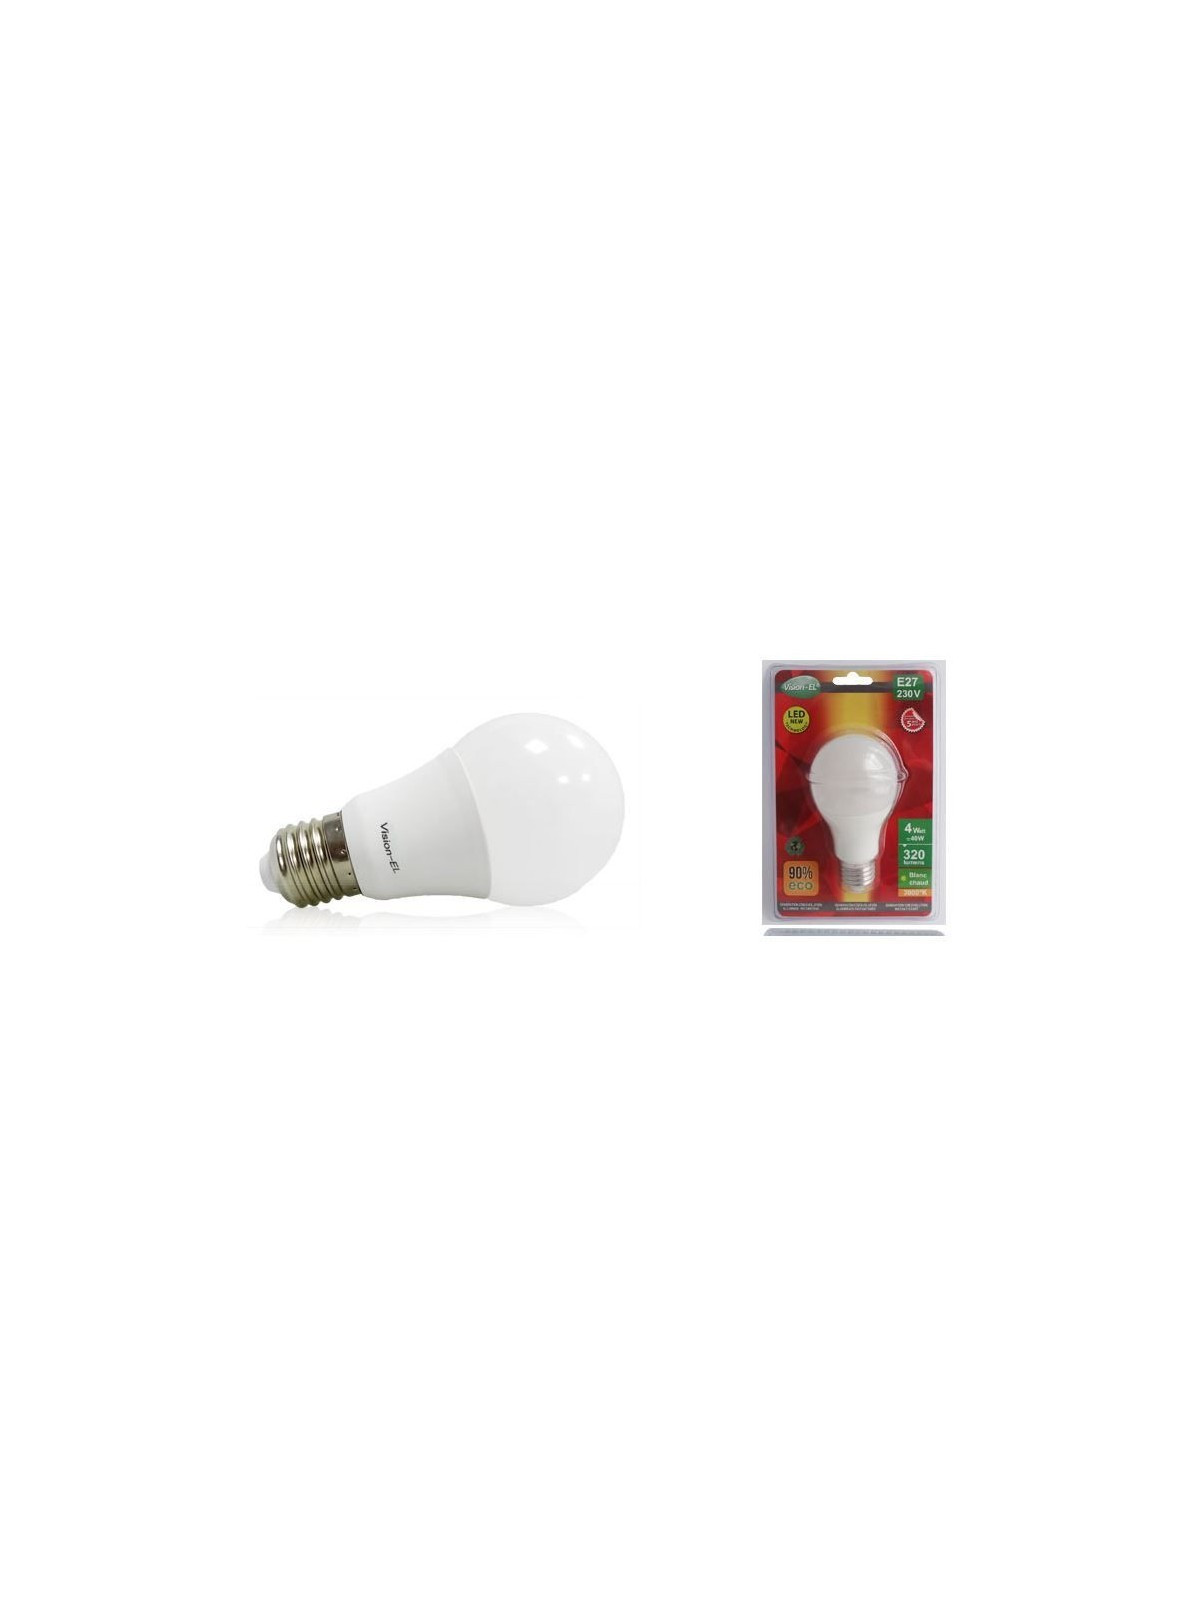 Ampoule à LED ronde E27 - 6W - Eclairage